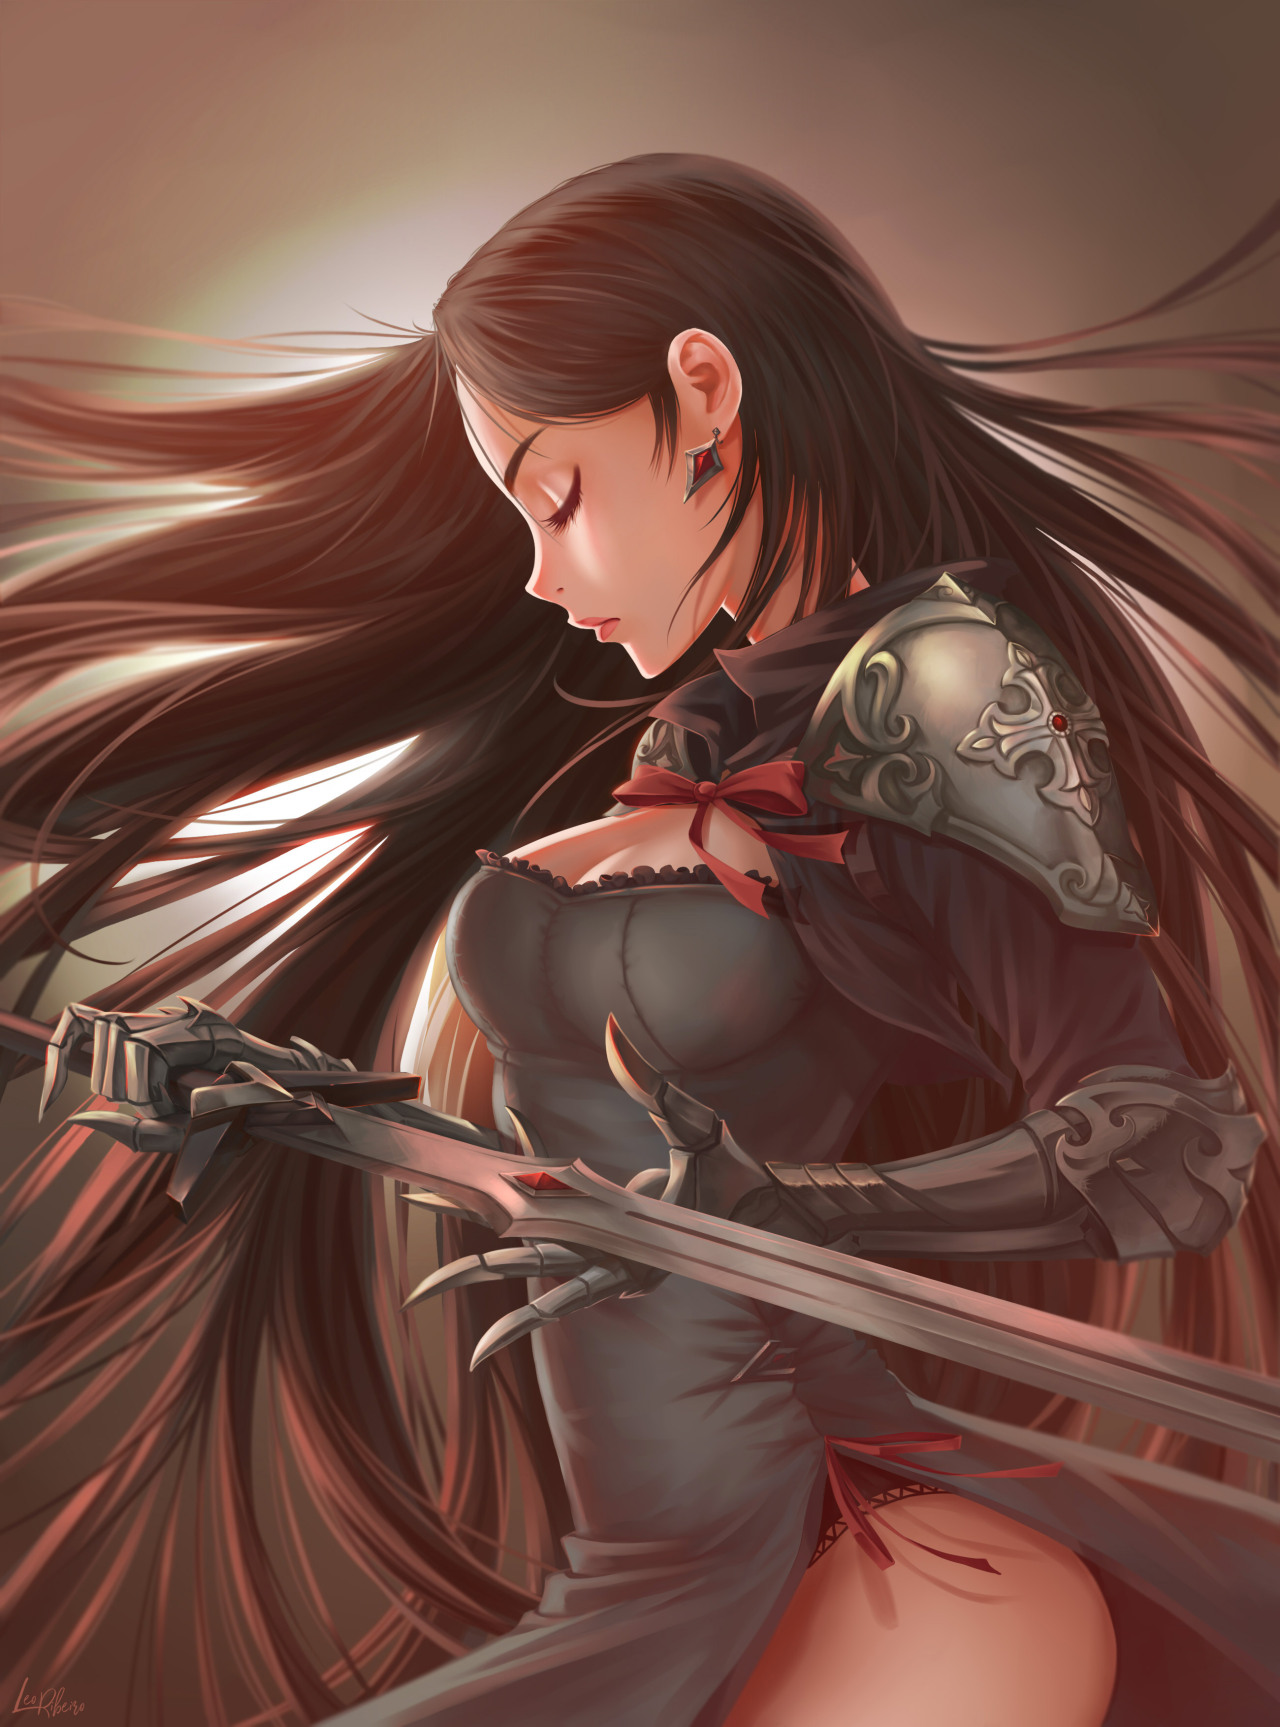 HD wallpaper Anime warrior girl in grey dress holding sword 2d anime  charter  Wallpaper Flare